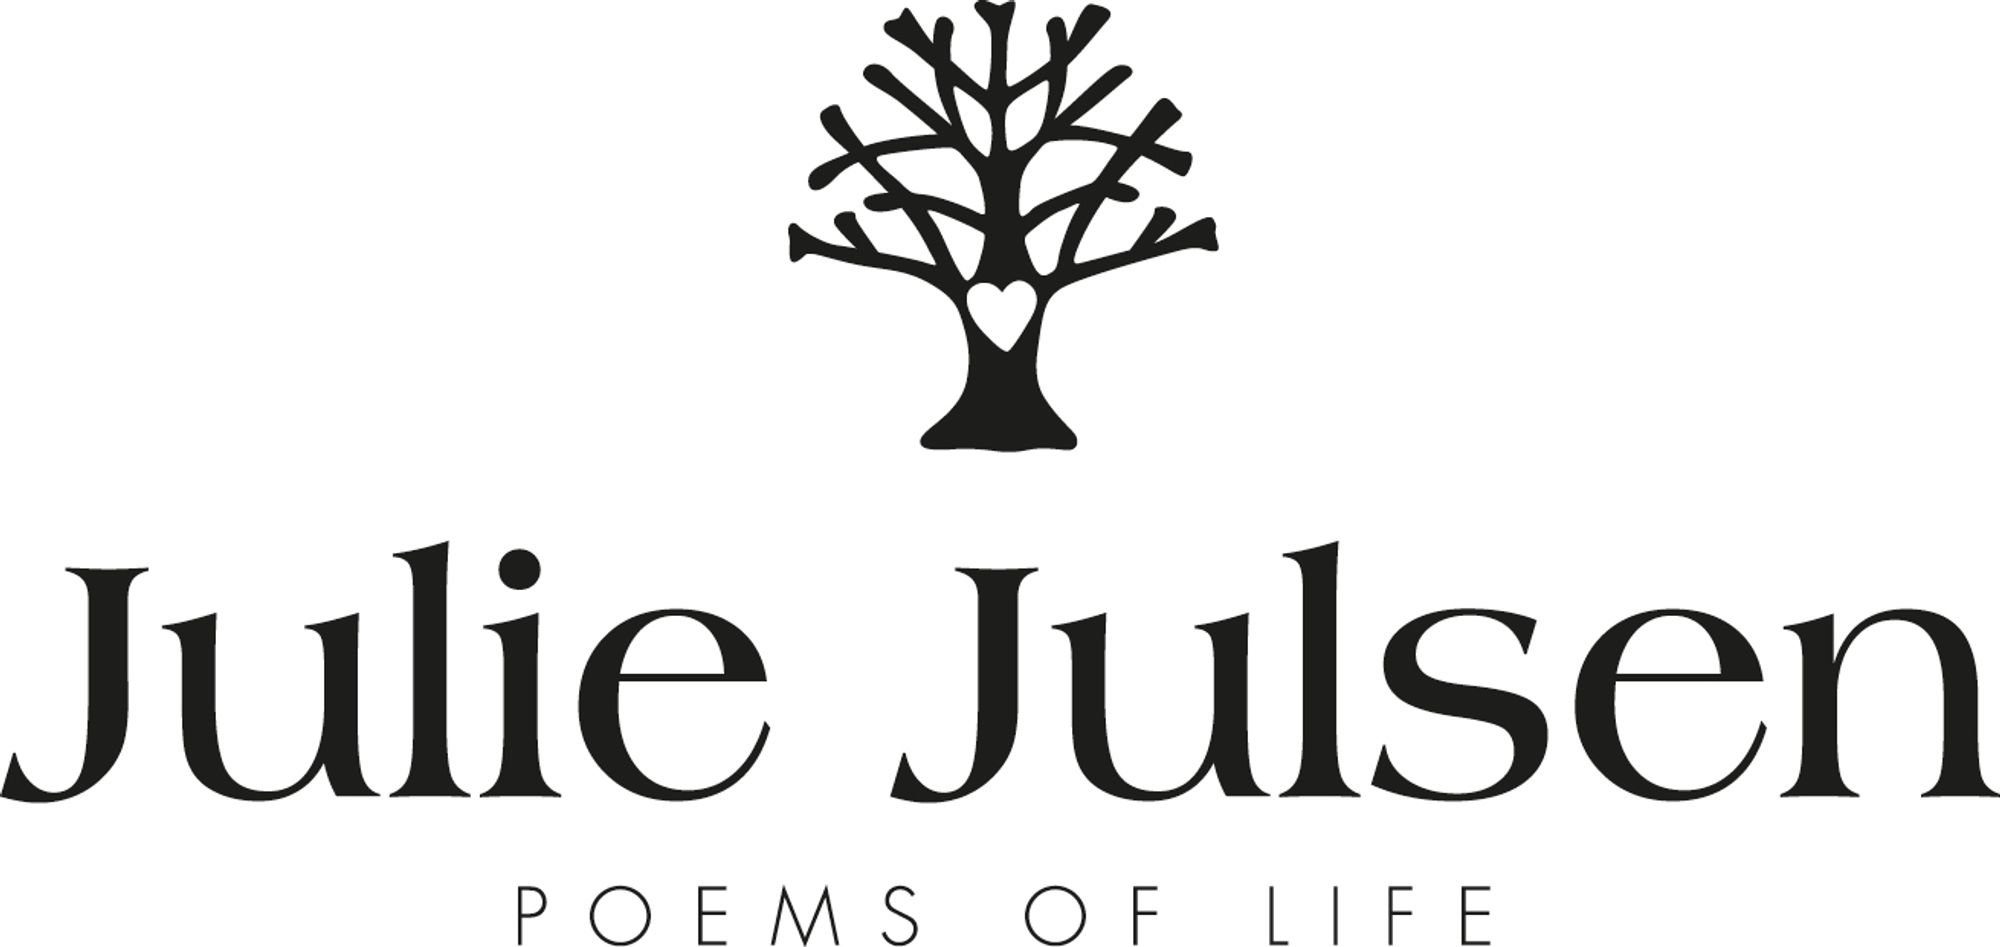 Julie Armband Julsen JJBR10186.1